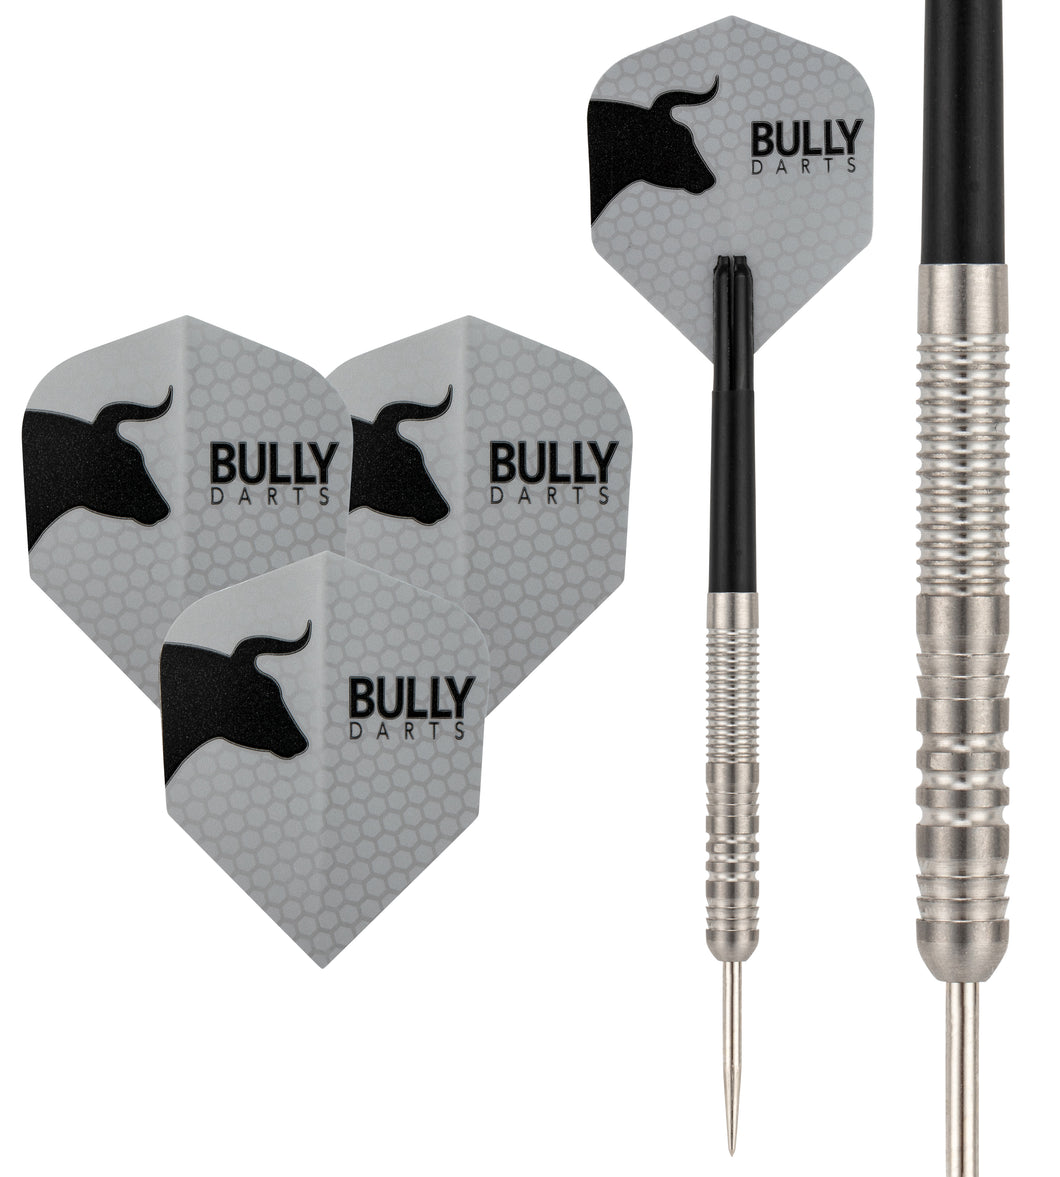 Bully 9 - 90% Tungsten Darts - Dart Flights - Stems - Wallet - 22g 24g 26g